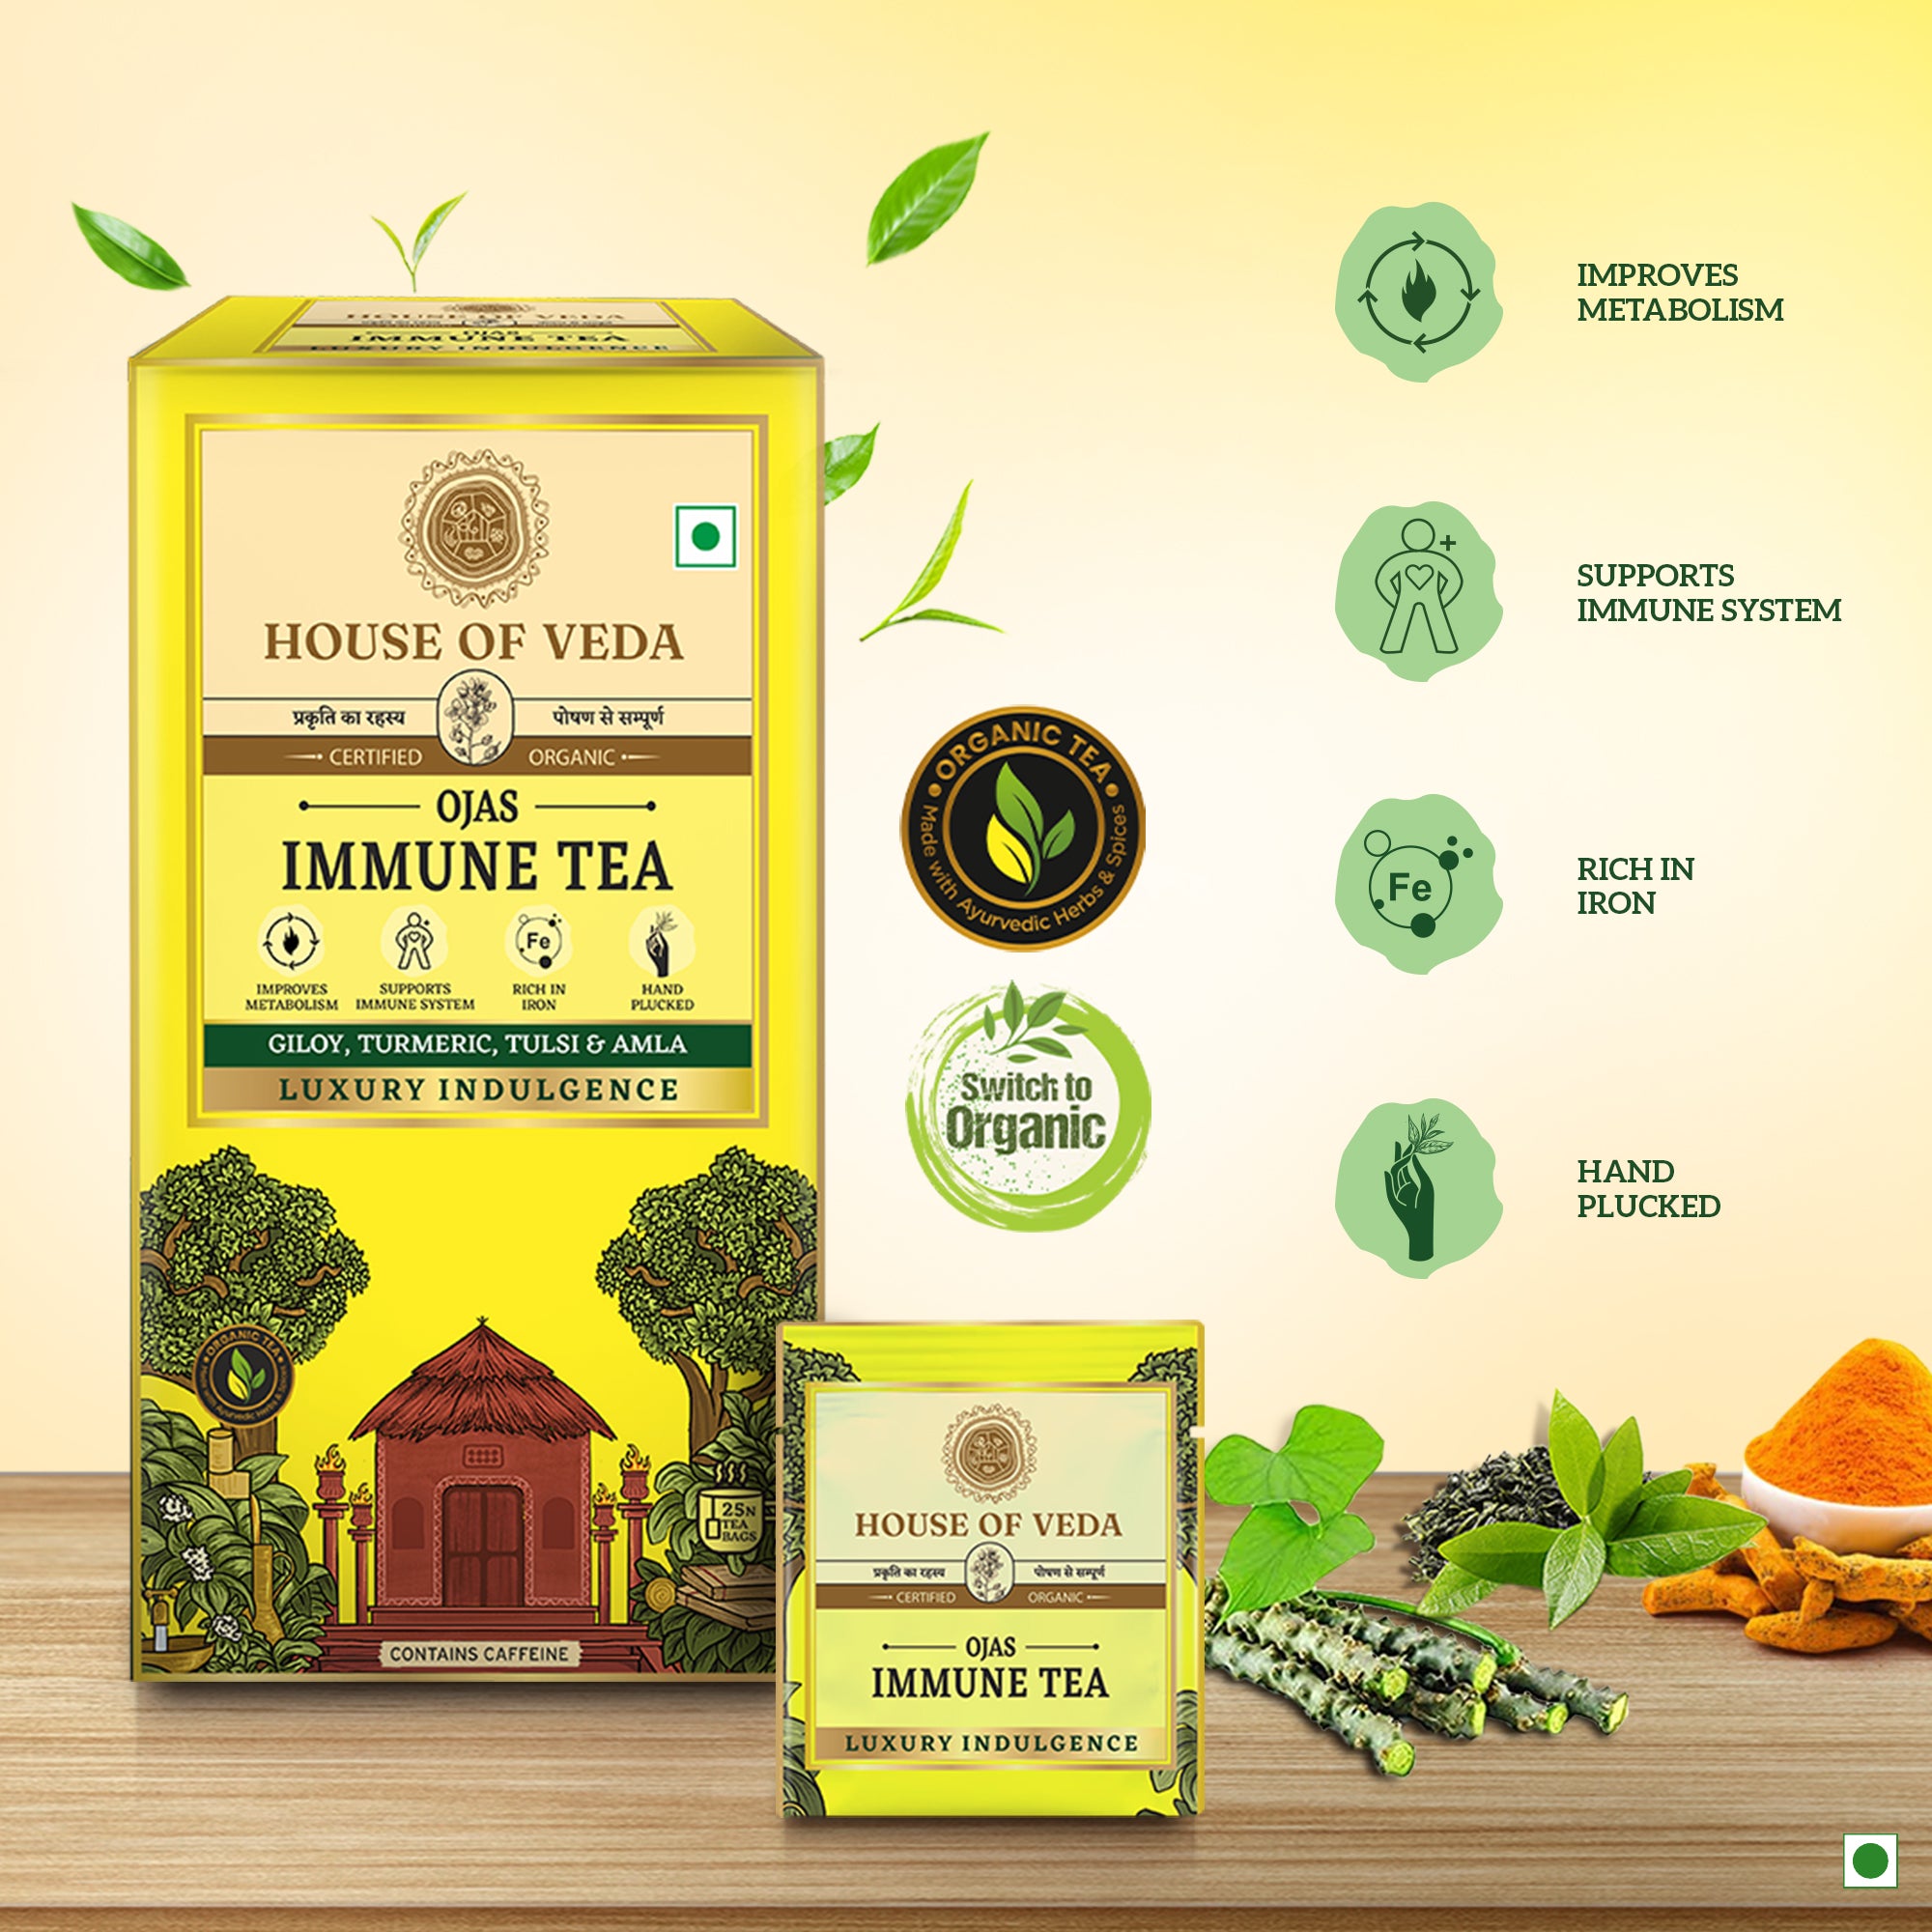 Immune Tea 25 Tea Bag